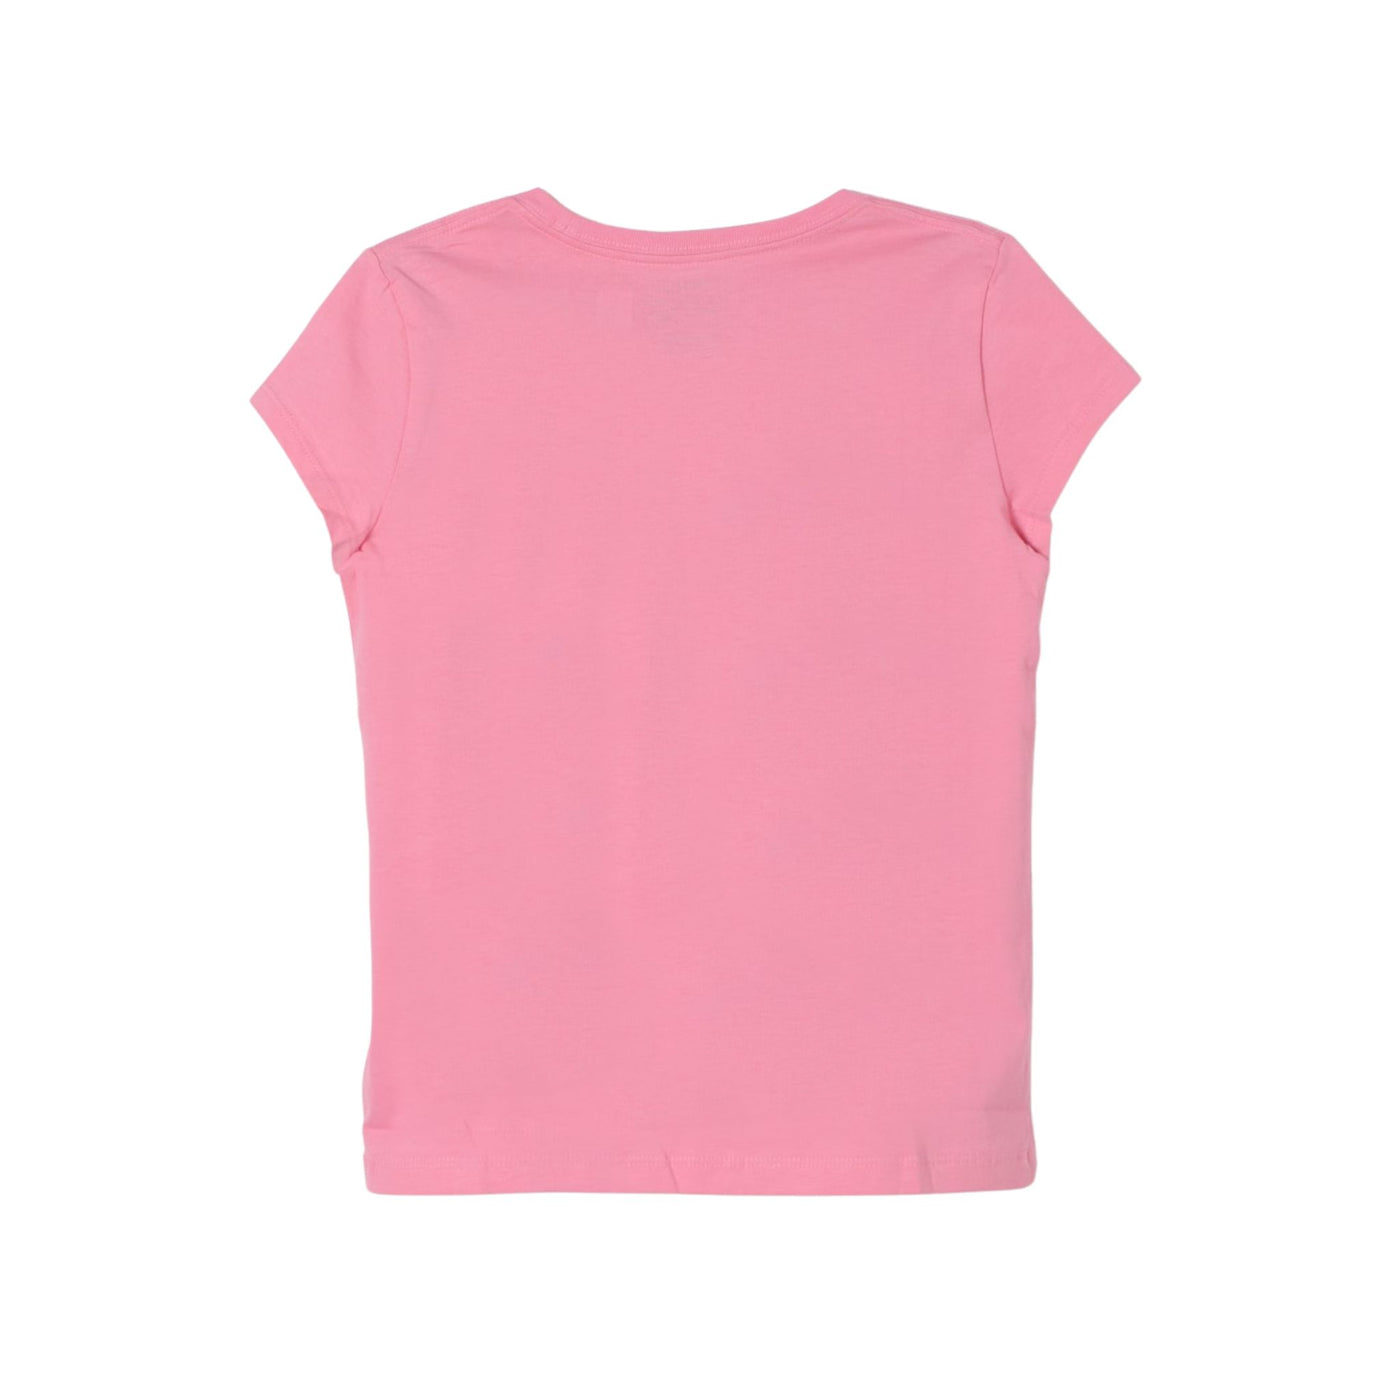 T-shirt Bambina a girocollo realizzata in puro cotone